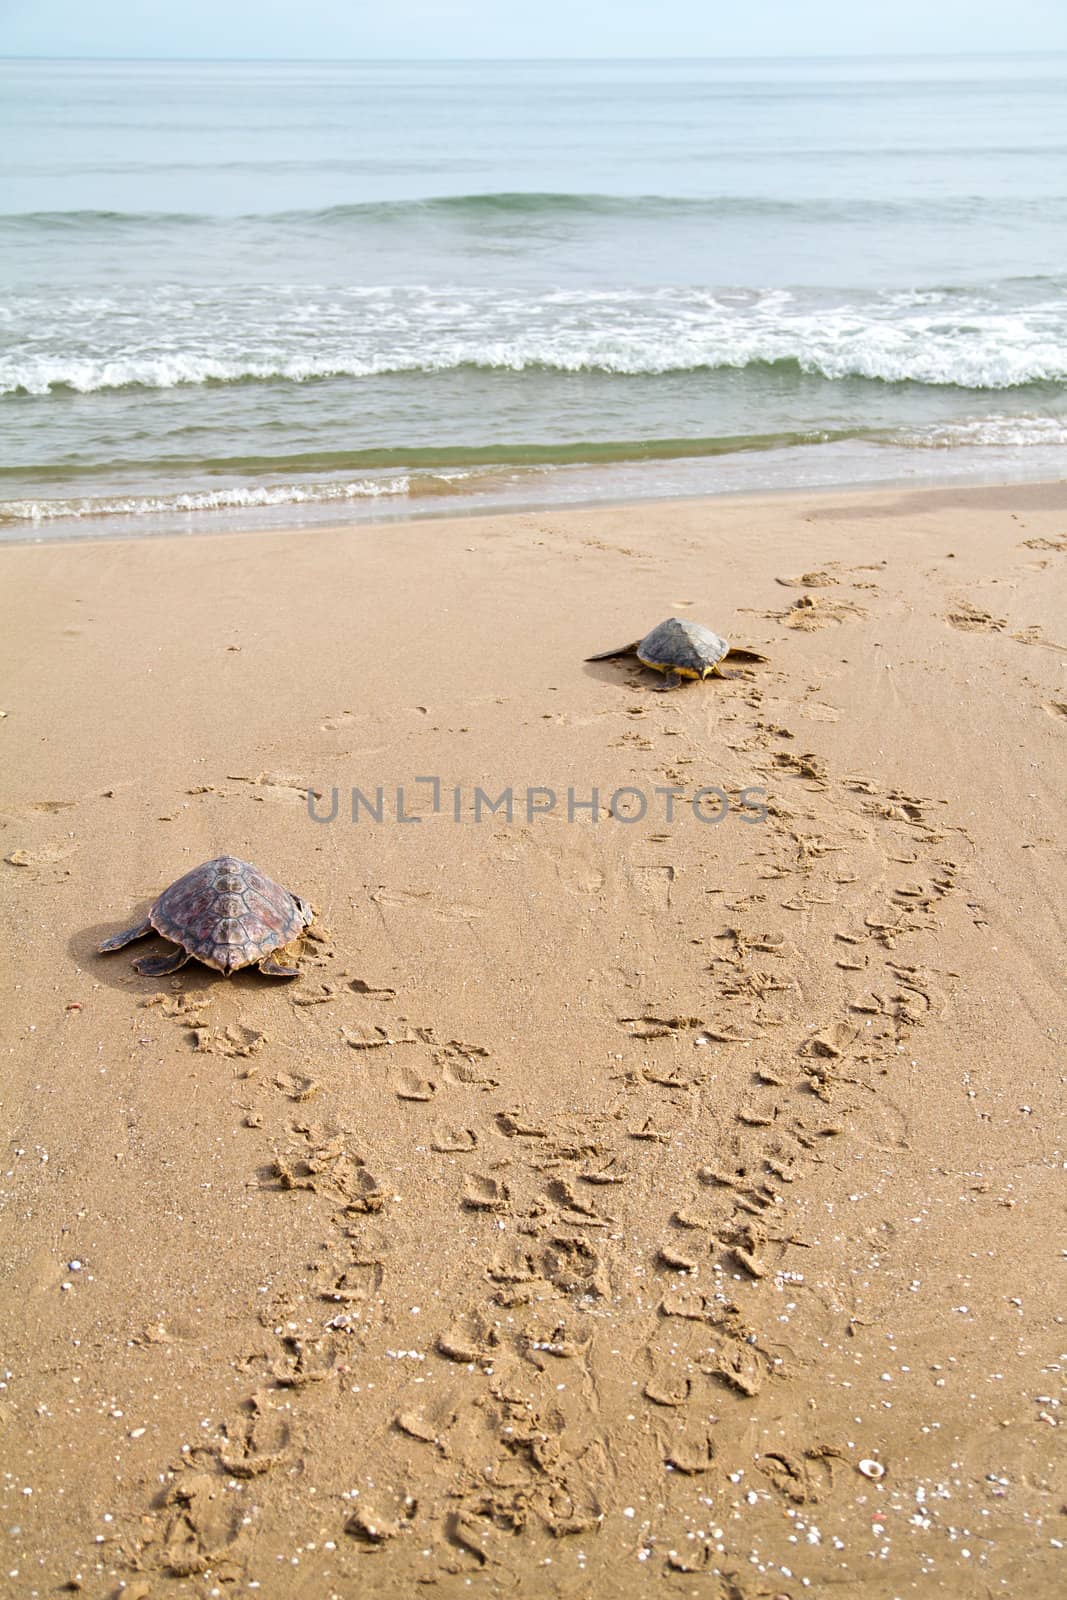 Loggerhead Sea Turtles by benjaminet